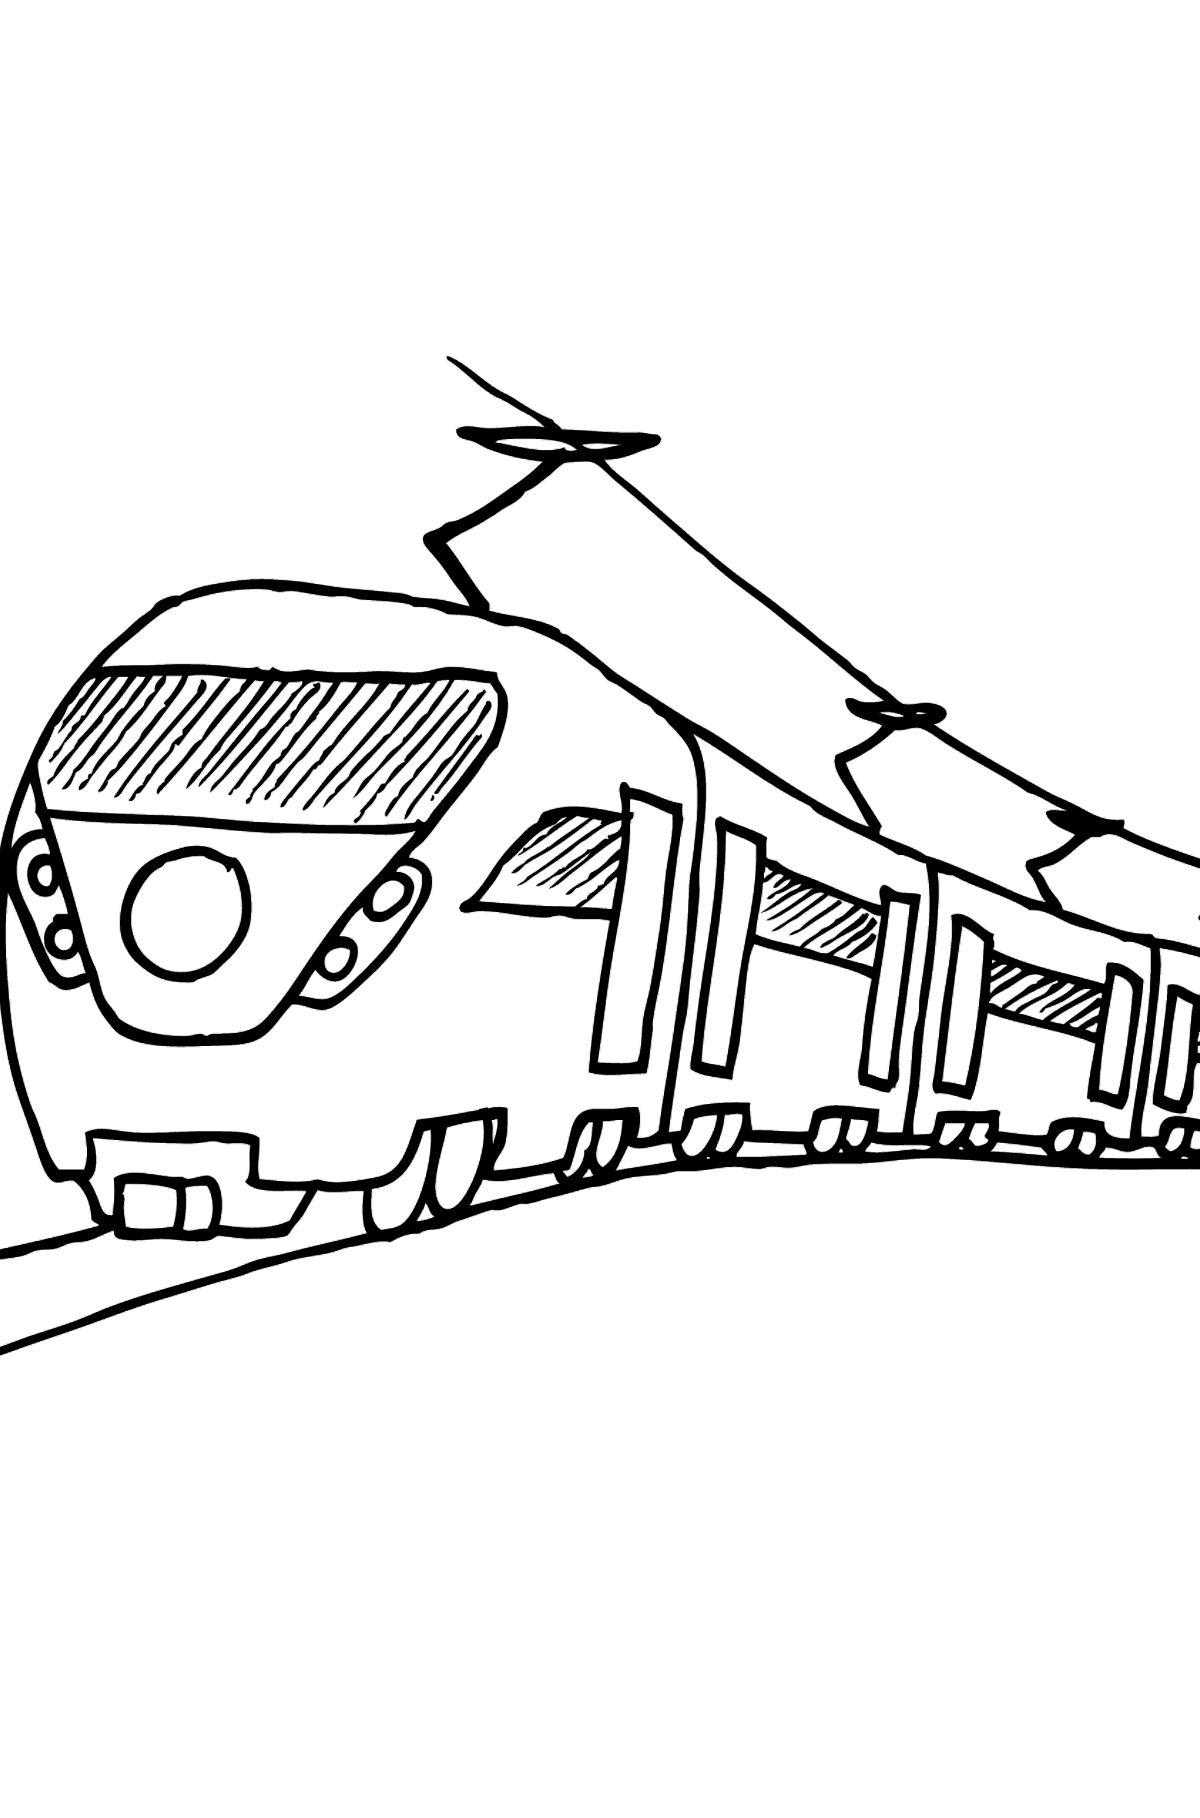 Dibujo para Colorear de Tren de Pasajeros - Dibujos para Colorear para Niños